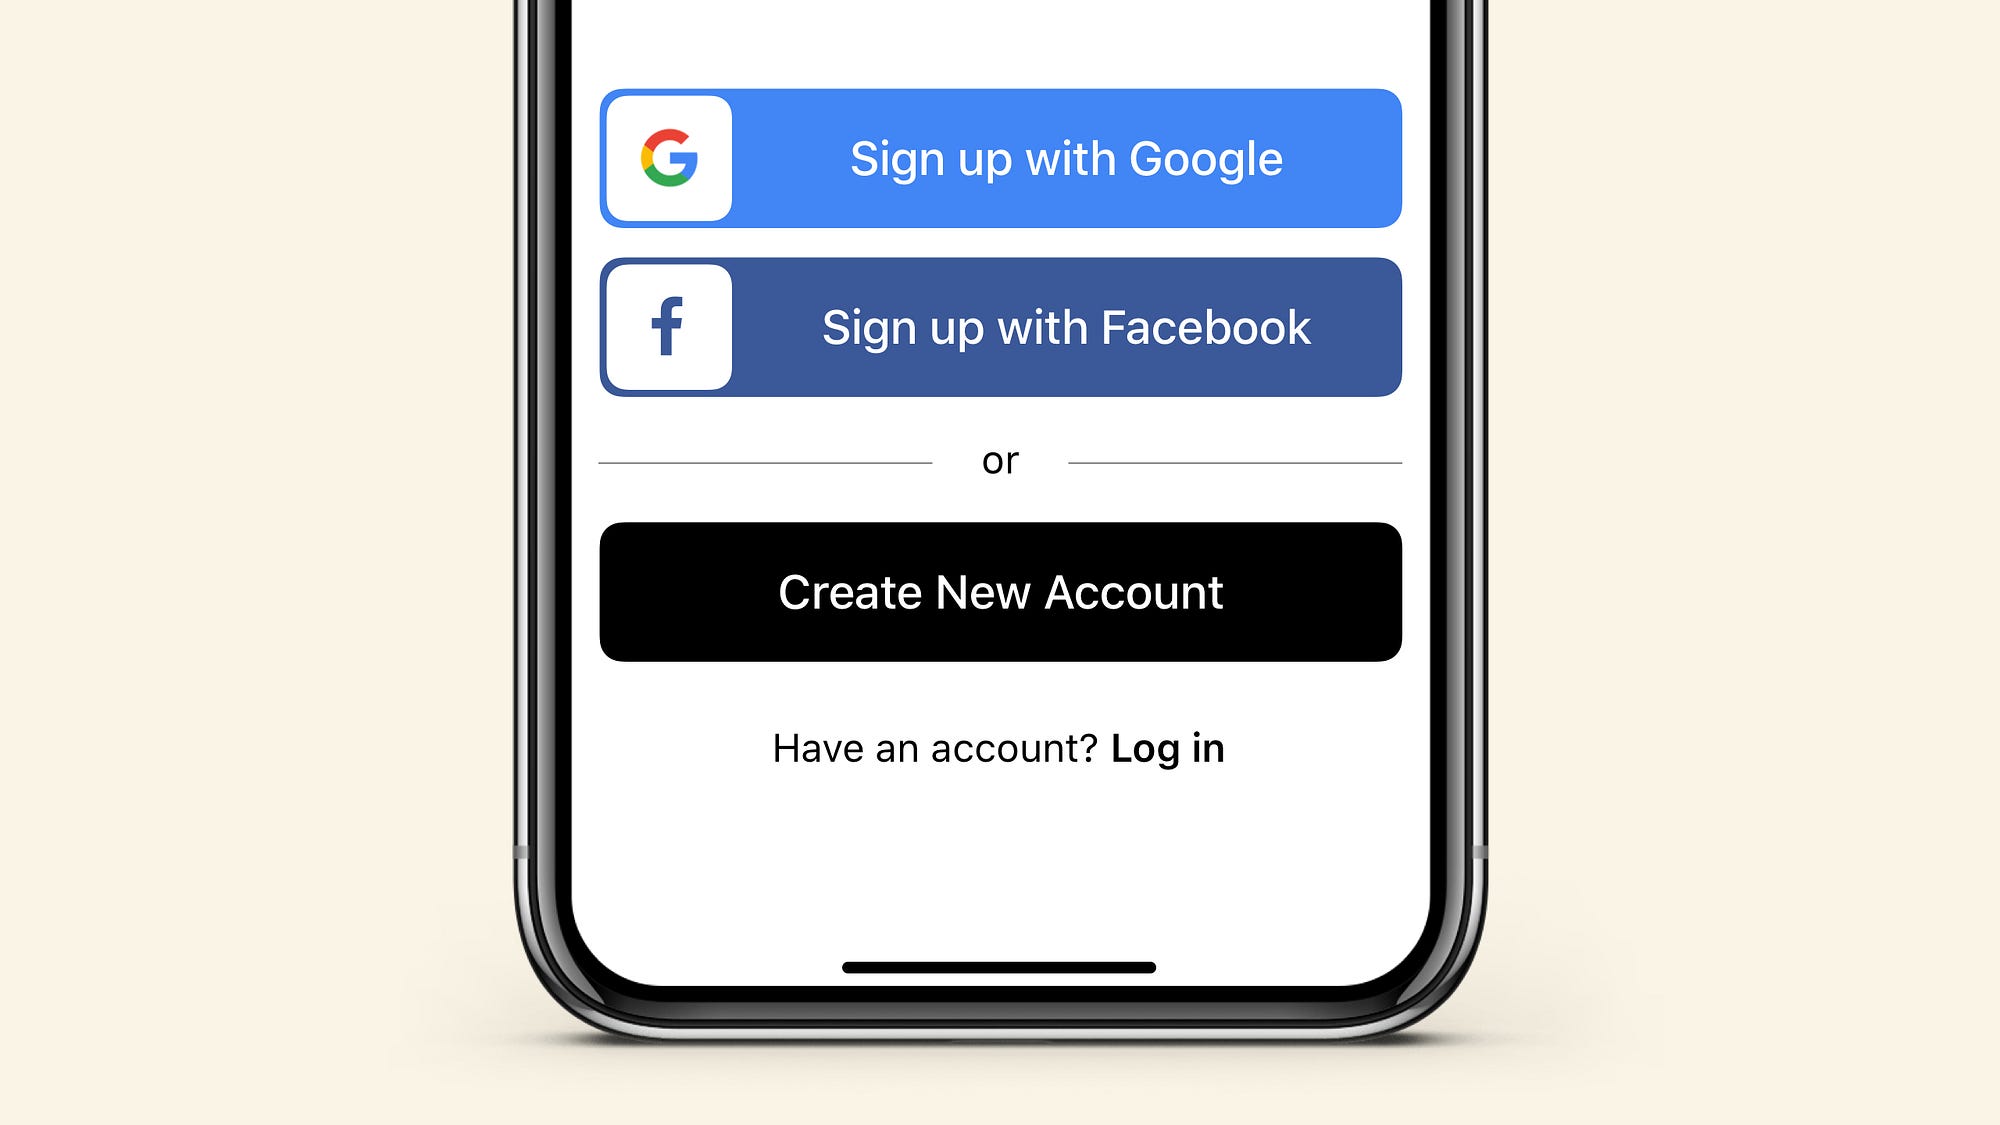 Facebook - Log In or Sign Up  Facebook login mobile app